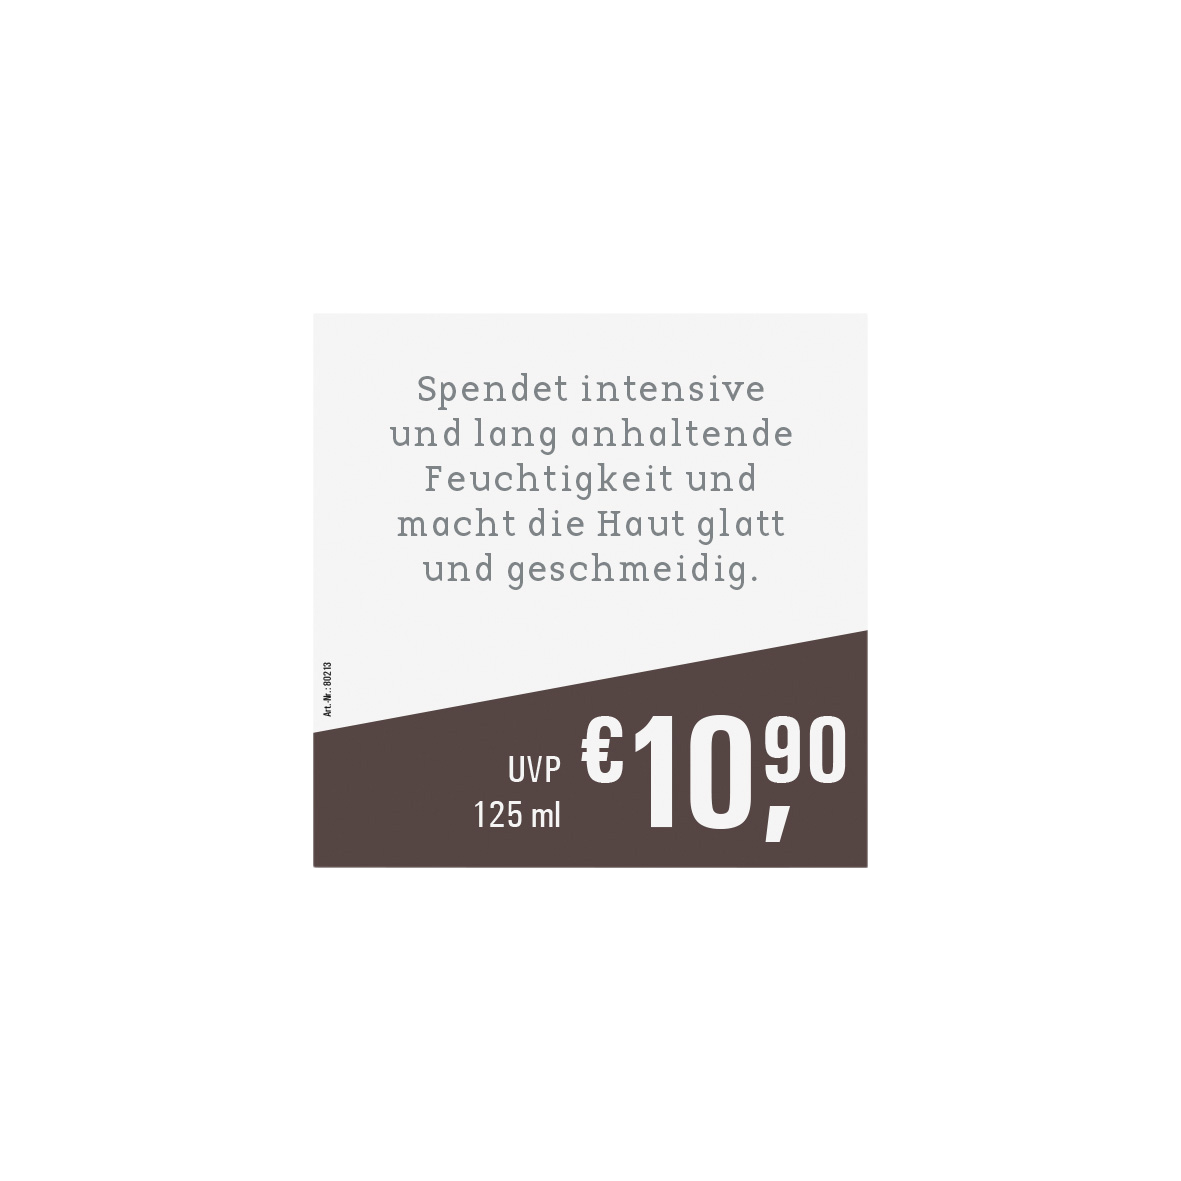 preiseinlegenblatt-cremschaum-hand_55248